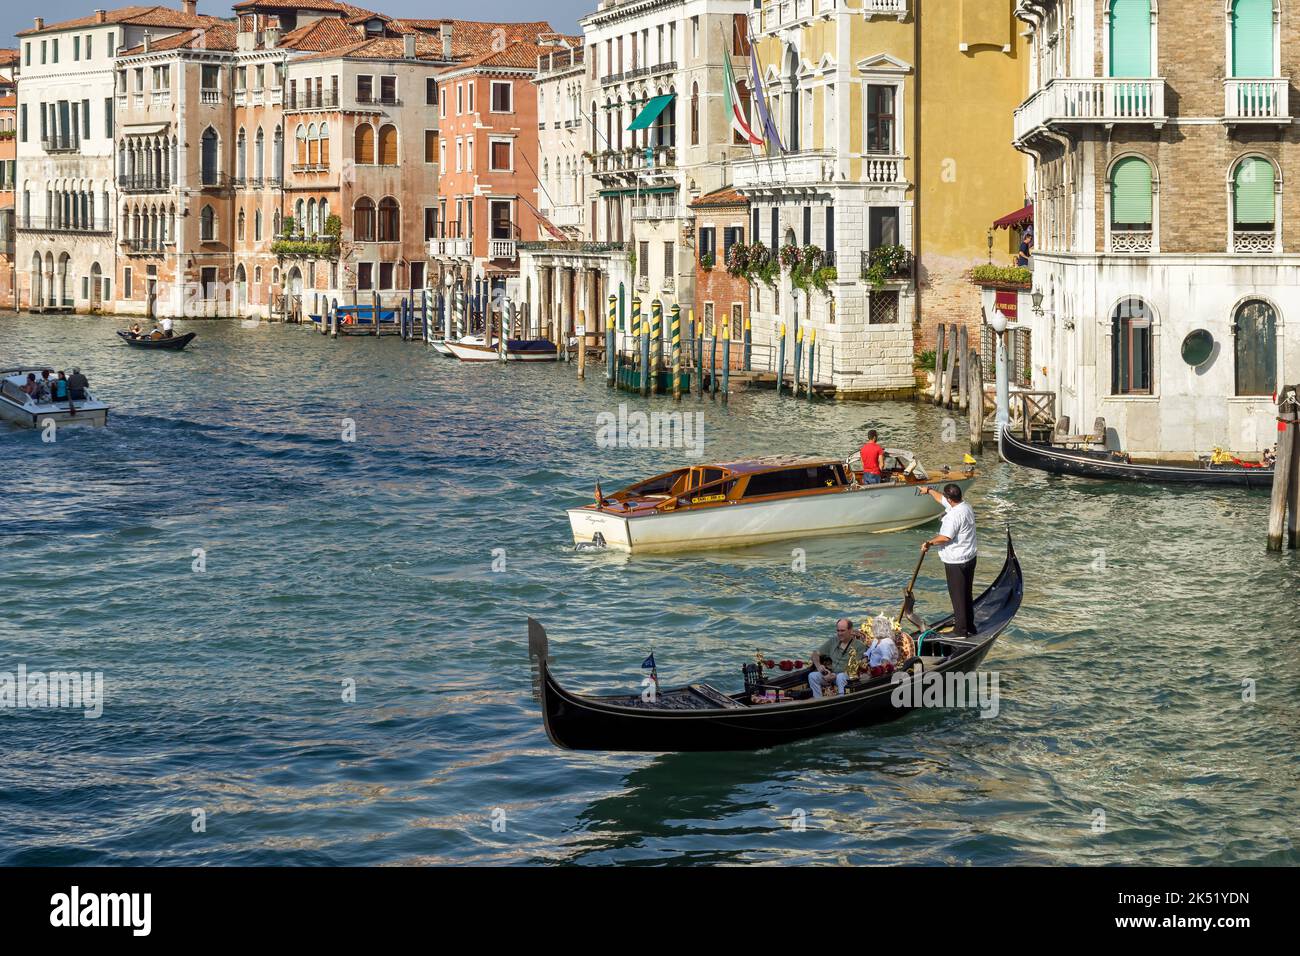 VENISE, ITALIE - OCTOBRE 12 : gondolier en train de piller son commerce sur le Grand Canal de Venise sur 12 octobre 2014. Personnes non identifiées Banque D'Images